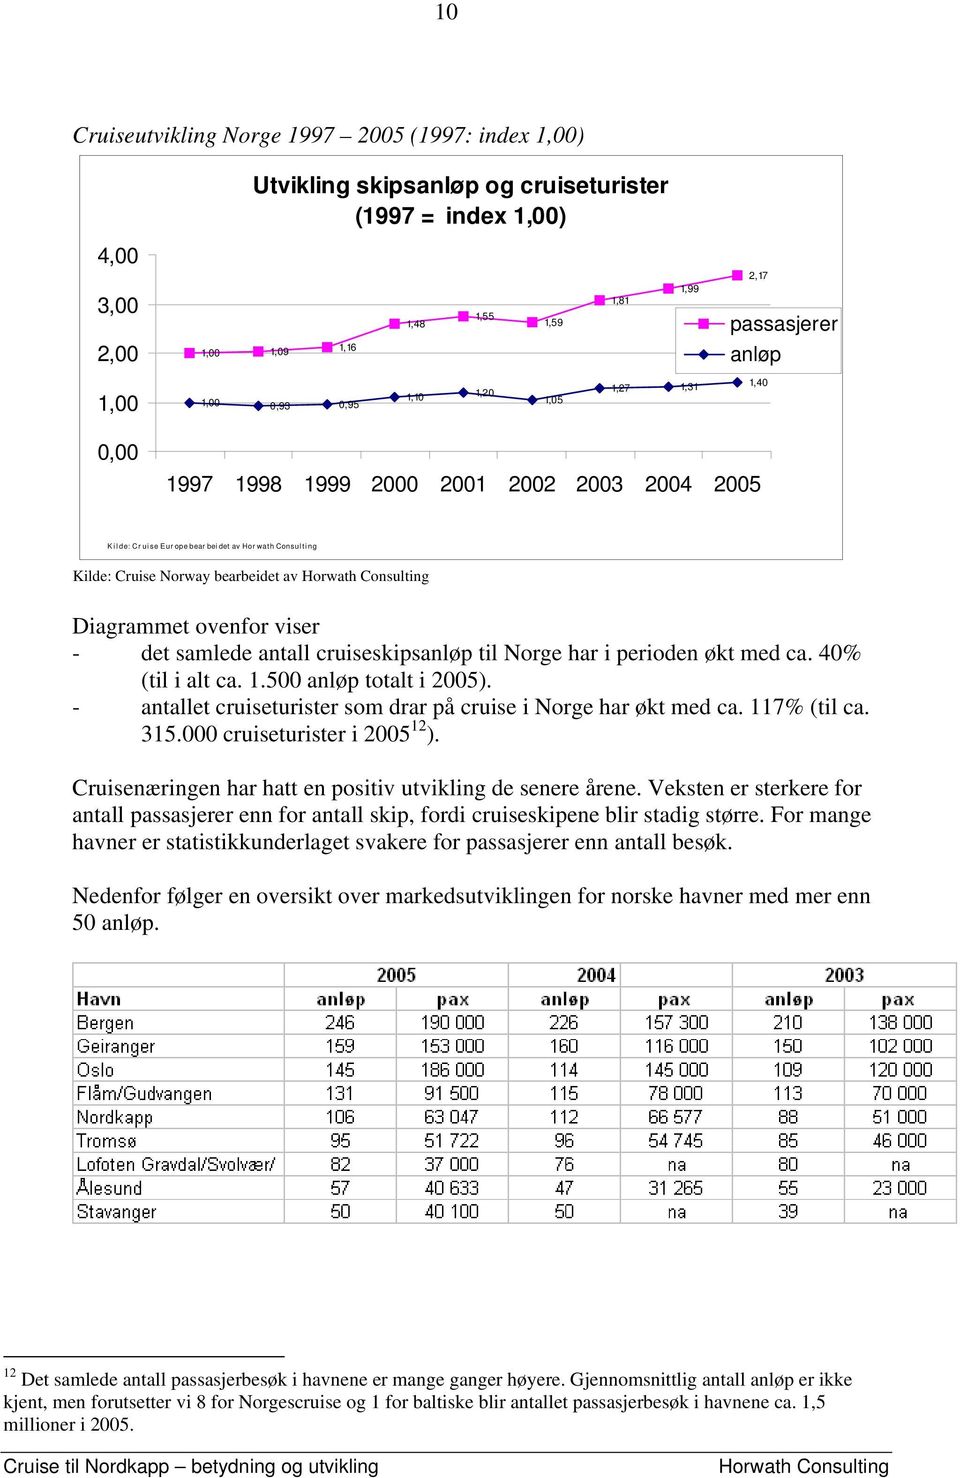 Diagrammet ovenfor viser - det samlede antall cruiseskipsanløp til Norge har i perioden økt med ca. 40% (til i alt ca. 1.500 anløp totalt i 2005).